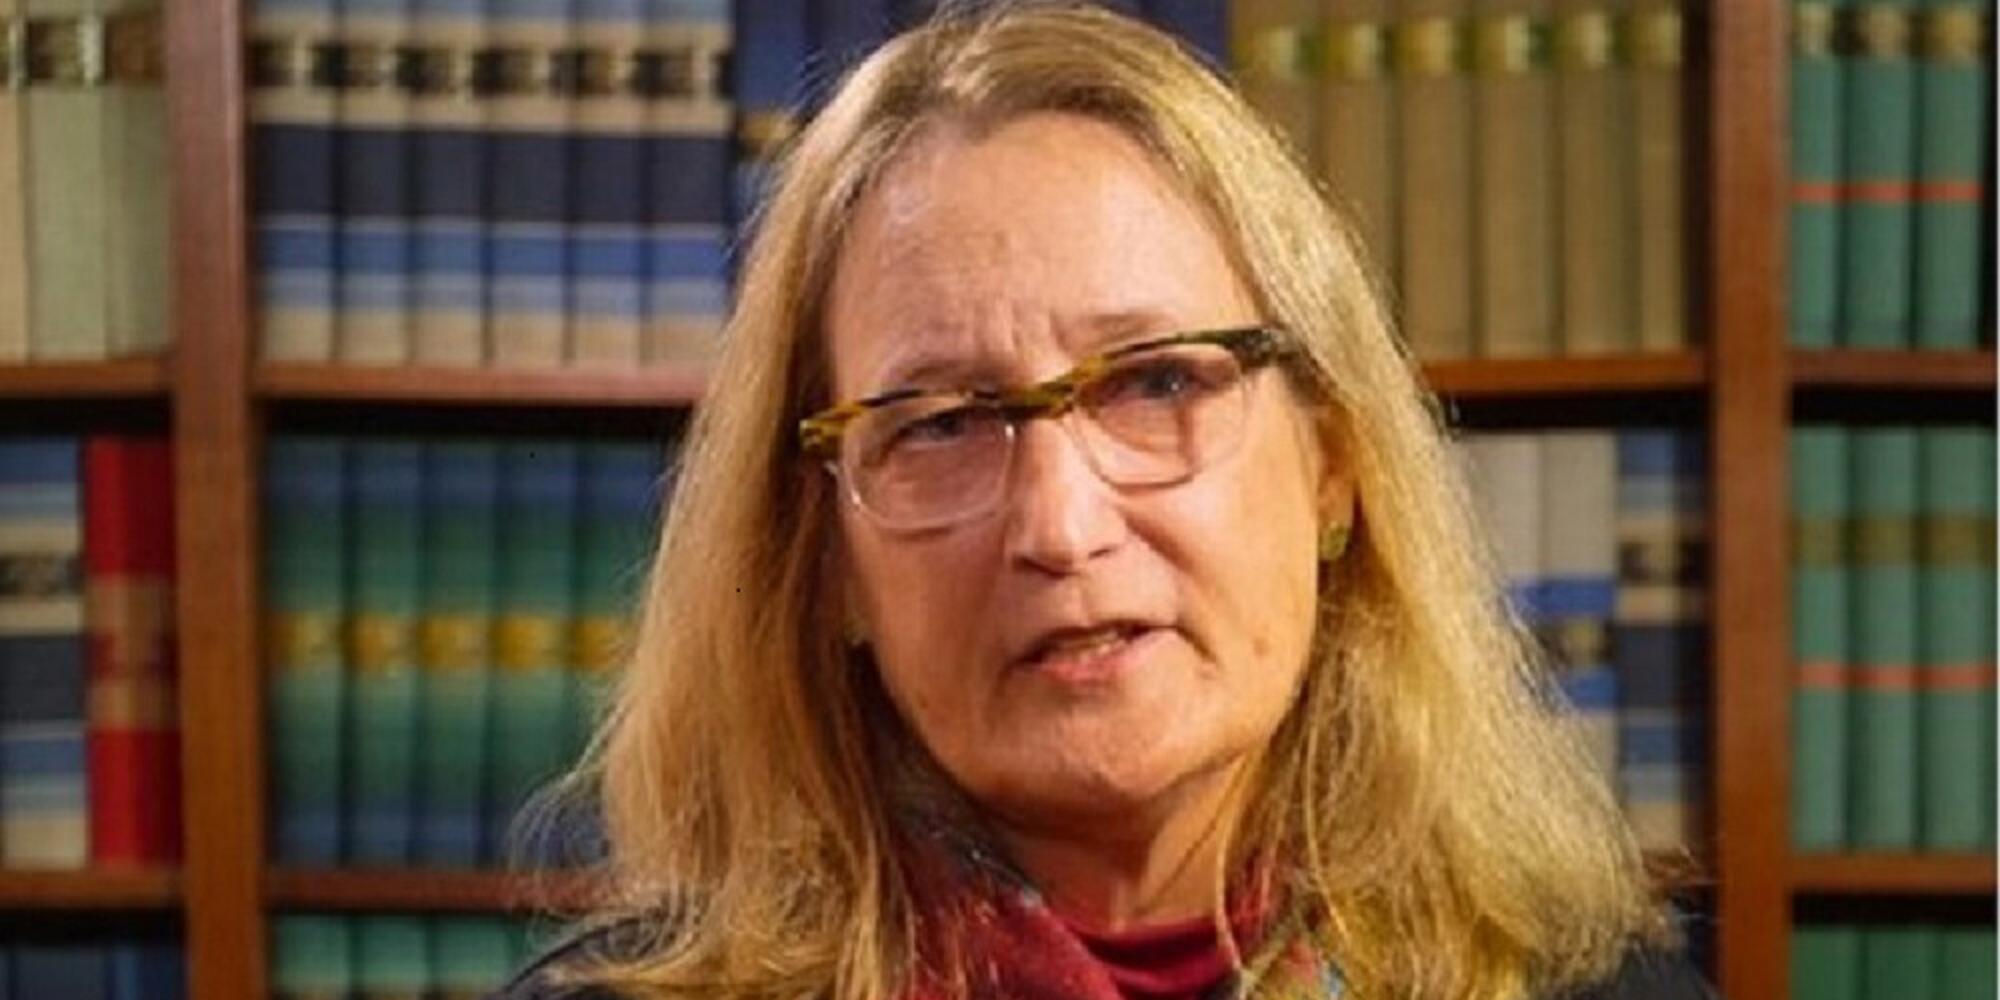 Professor Kathryn Oberdeck